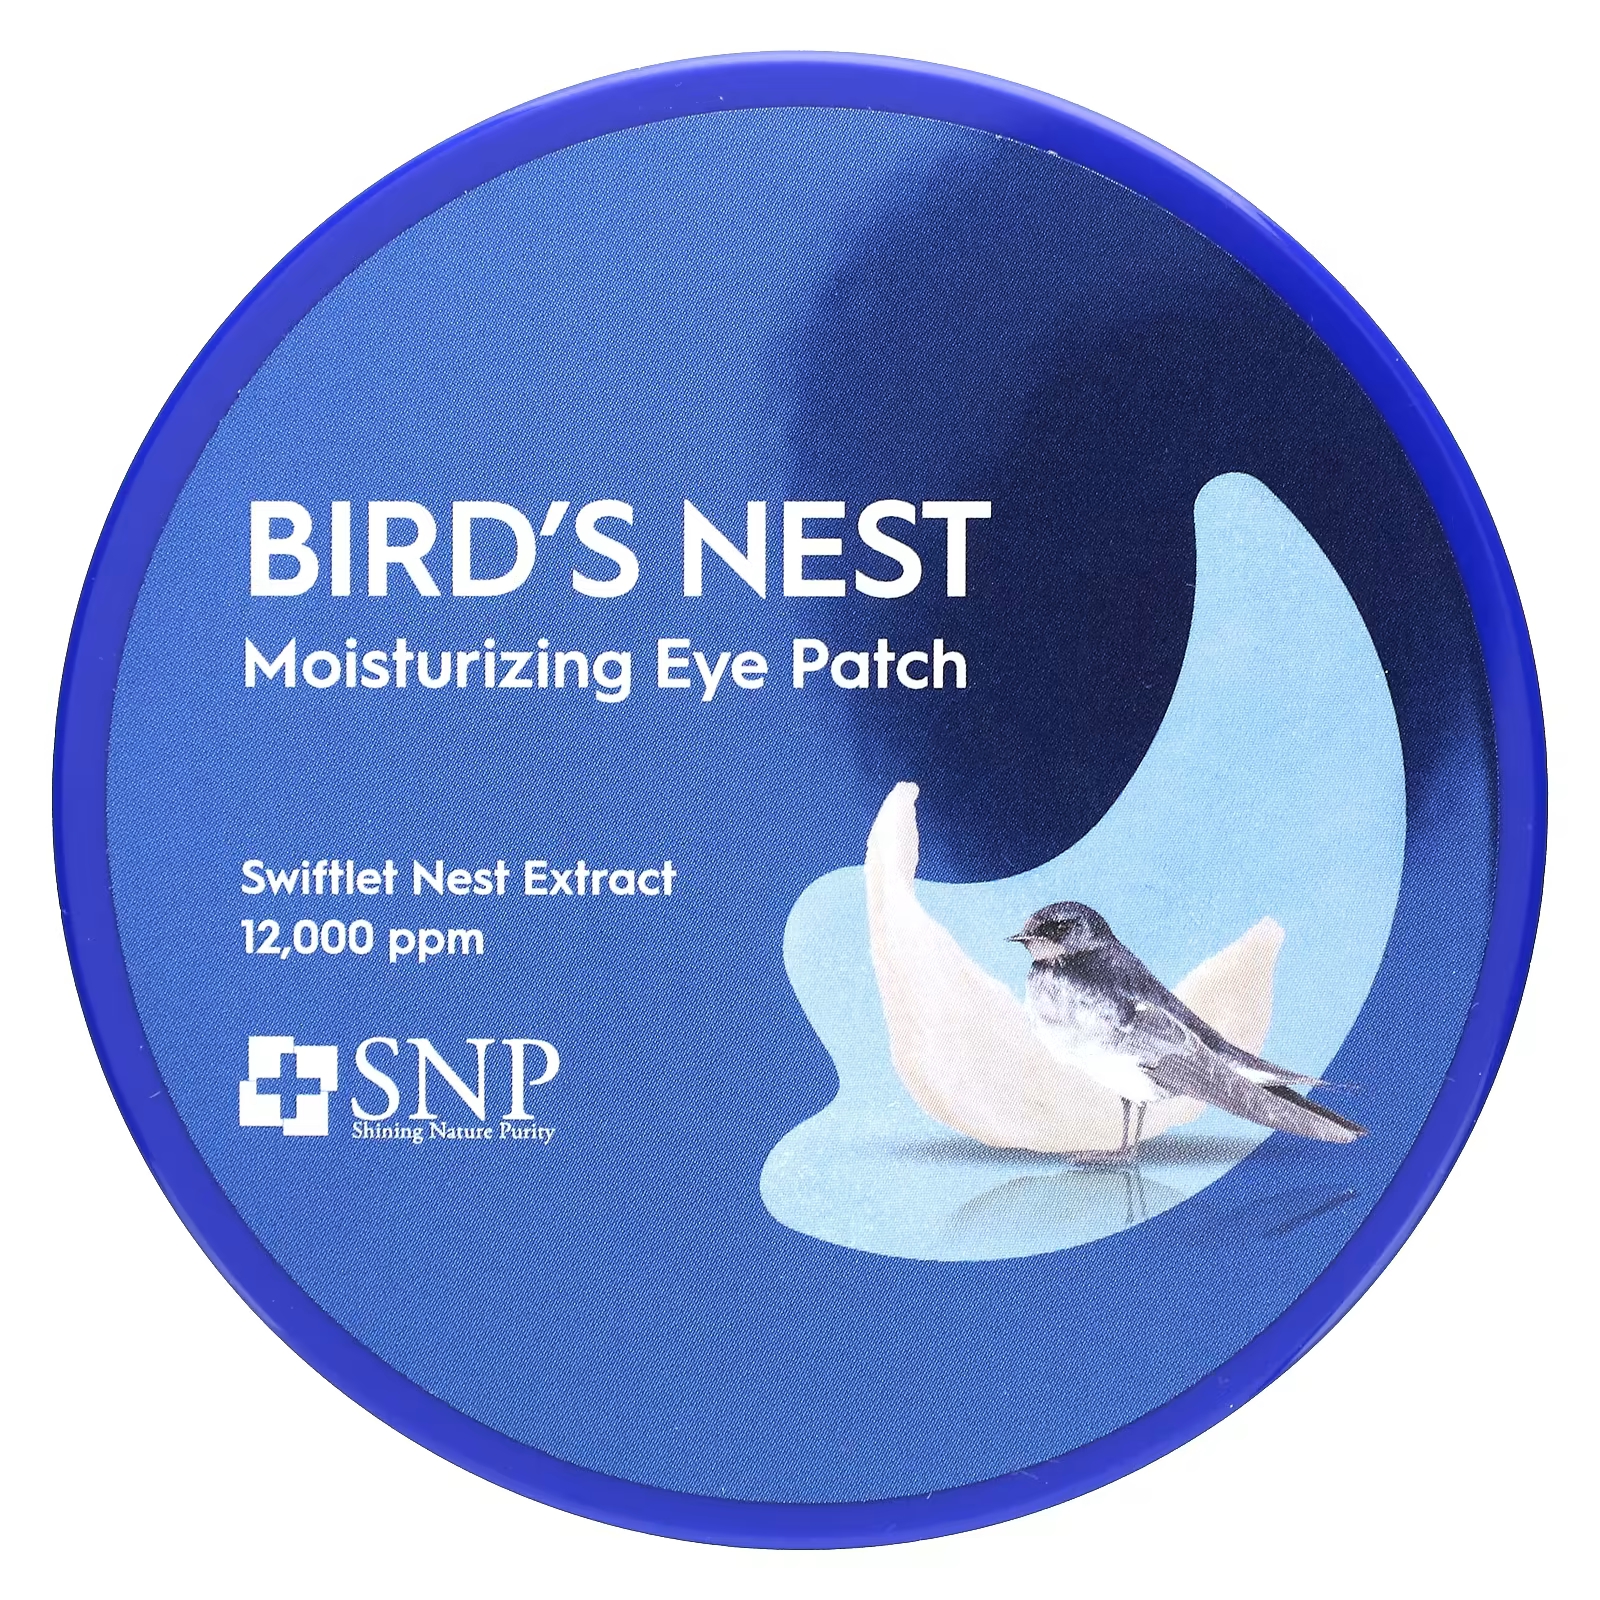 SNP Bird's Nest Увлажняющие патчи для глаз, 60 патчей по 0,04 унции (1,25 г) каждый